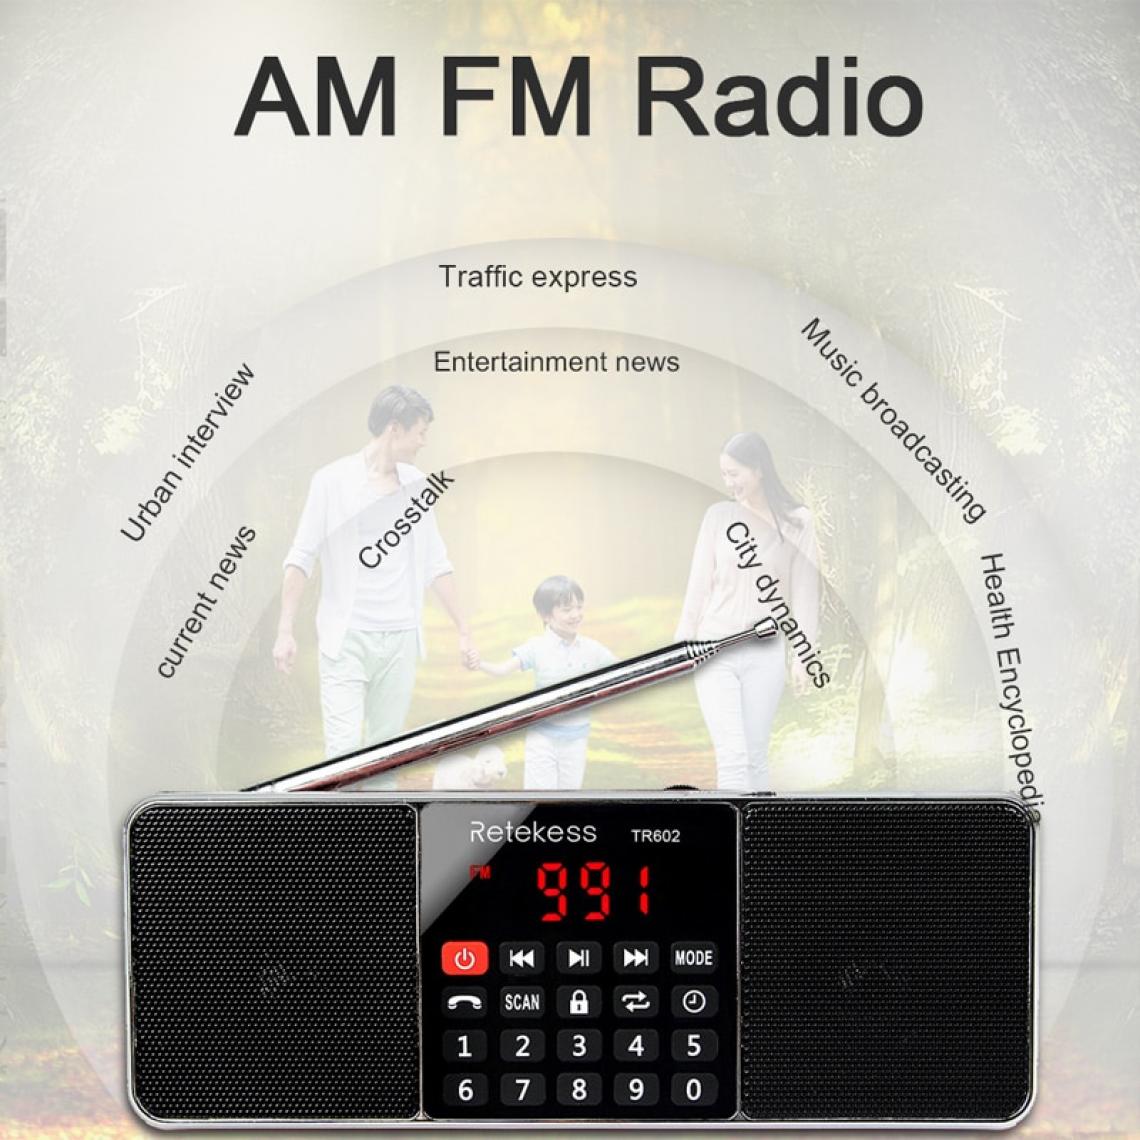 Universal - TR602 radio Bluetooth AM FM stéréo récepteur radio portable avec lecteur MP3 sans fil haut-parleur support carte TF minuteur de sommeil(Le noir) - Radio